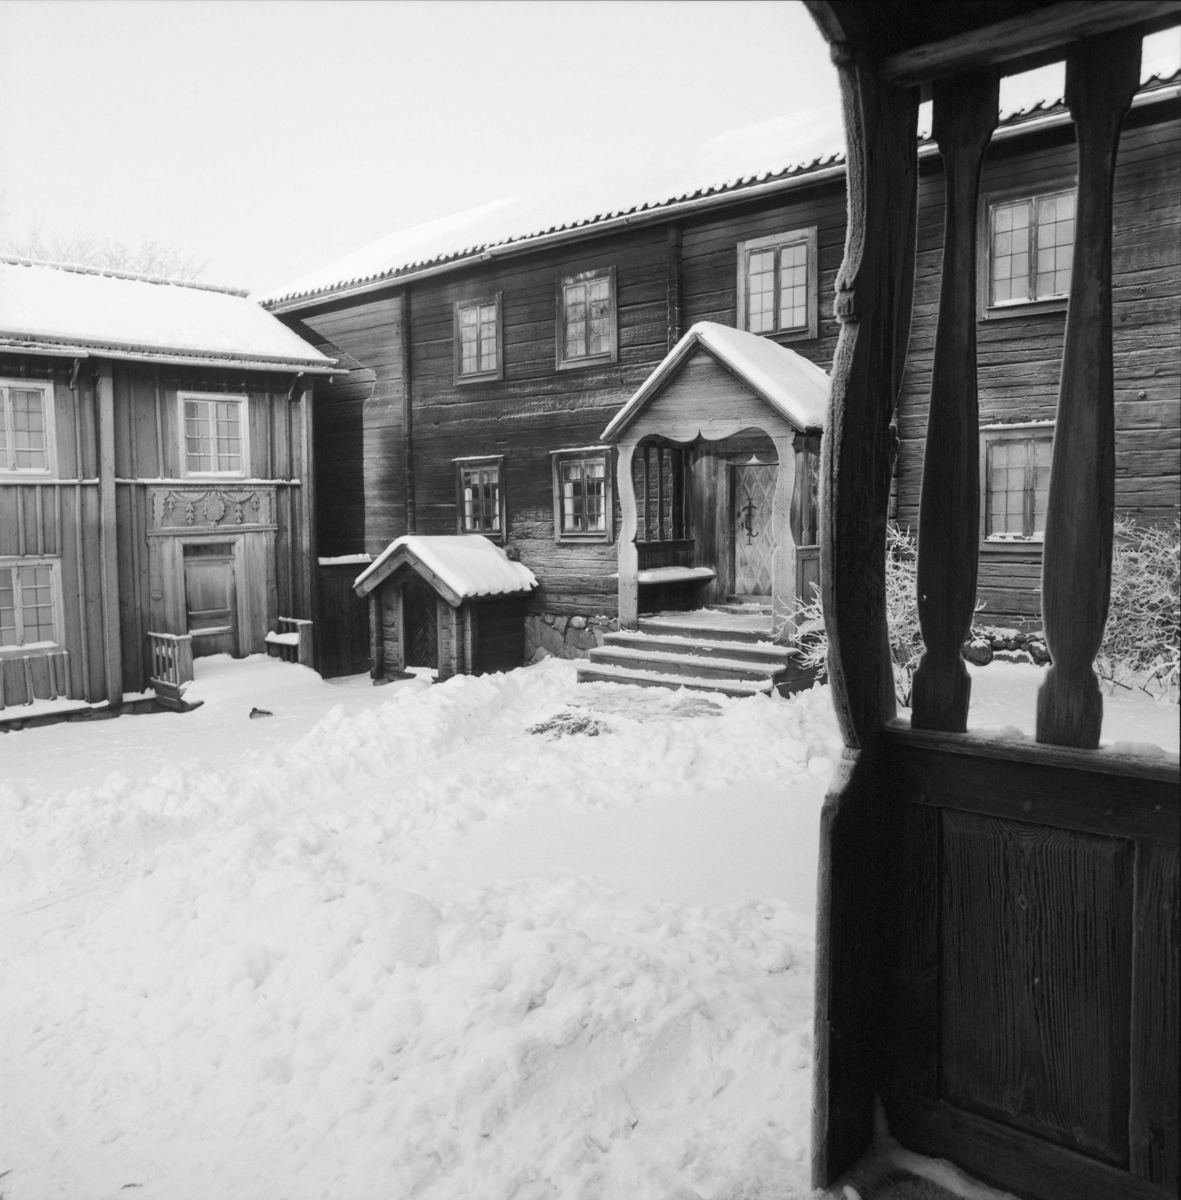 Vinterbilder på gårdar, ute och inne. Delsbogården, Skansen.